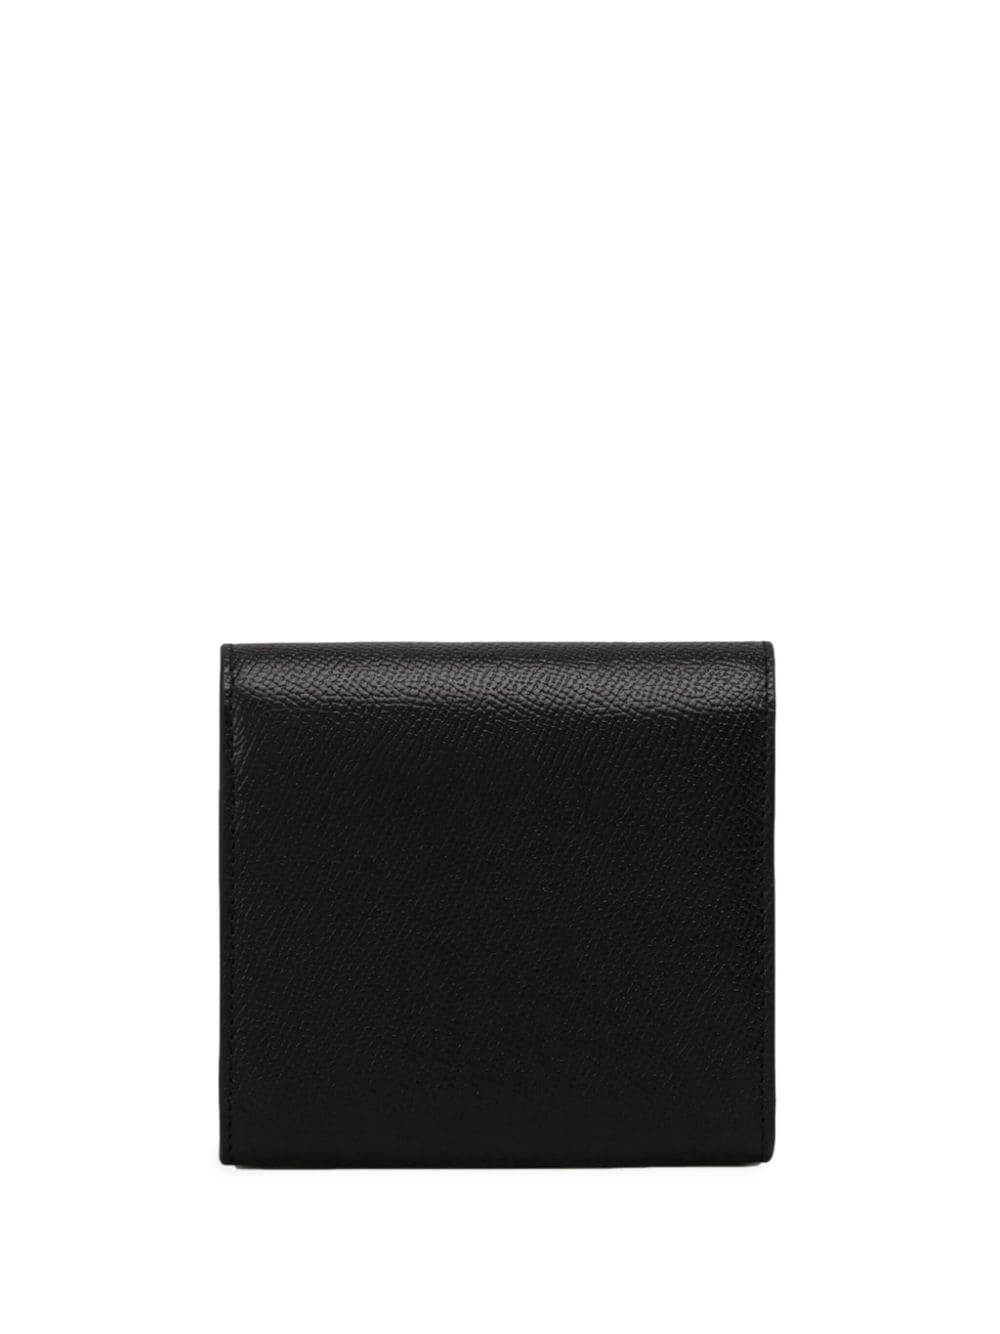 Shop Ami Alexandre Mattiussi Paris Paris Leather Wallet In Black